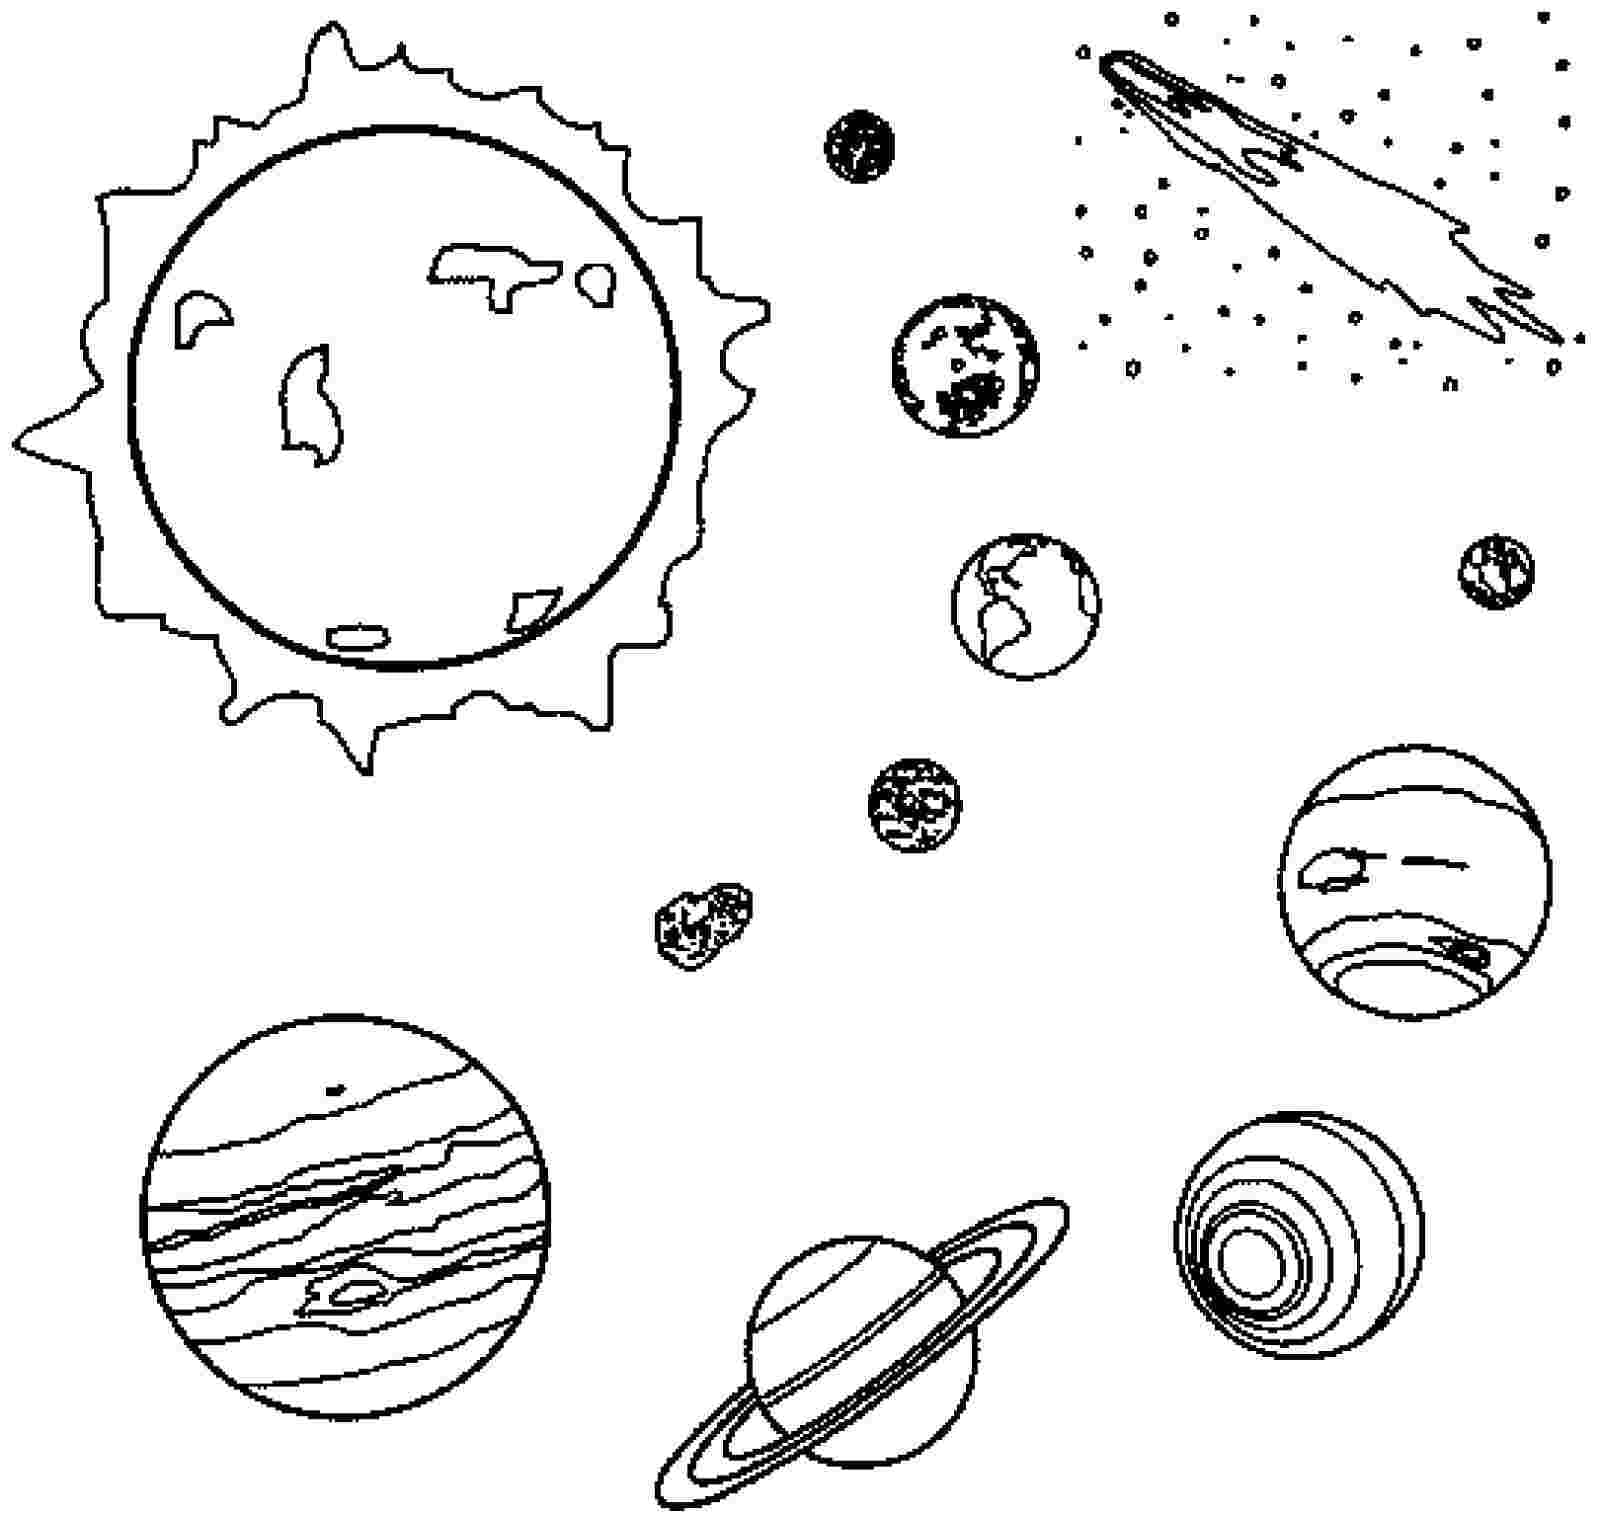 Как раскрасить планеты солнечной системы. Планеты солнечной системы раскраска Марс. Раскраска планеты солнечной системы для детей. Раскраска. В космосе. Космос картинки для детей раскраски.